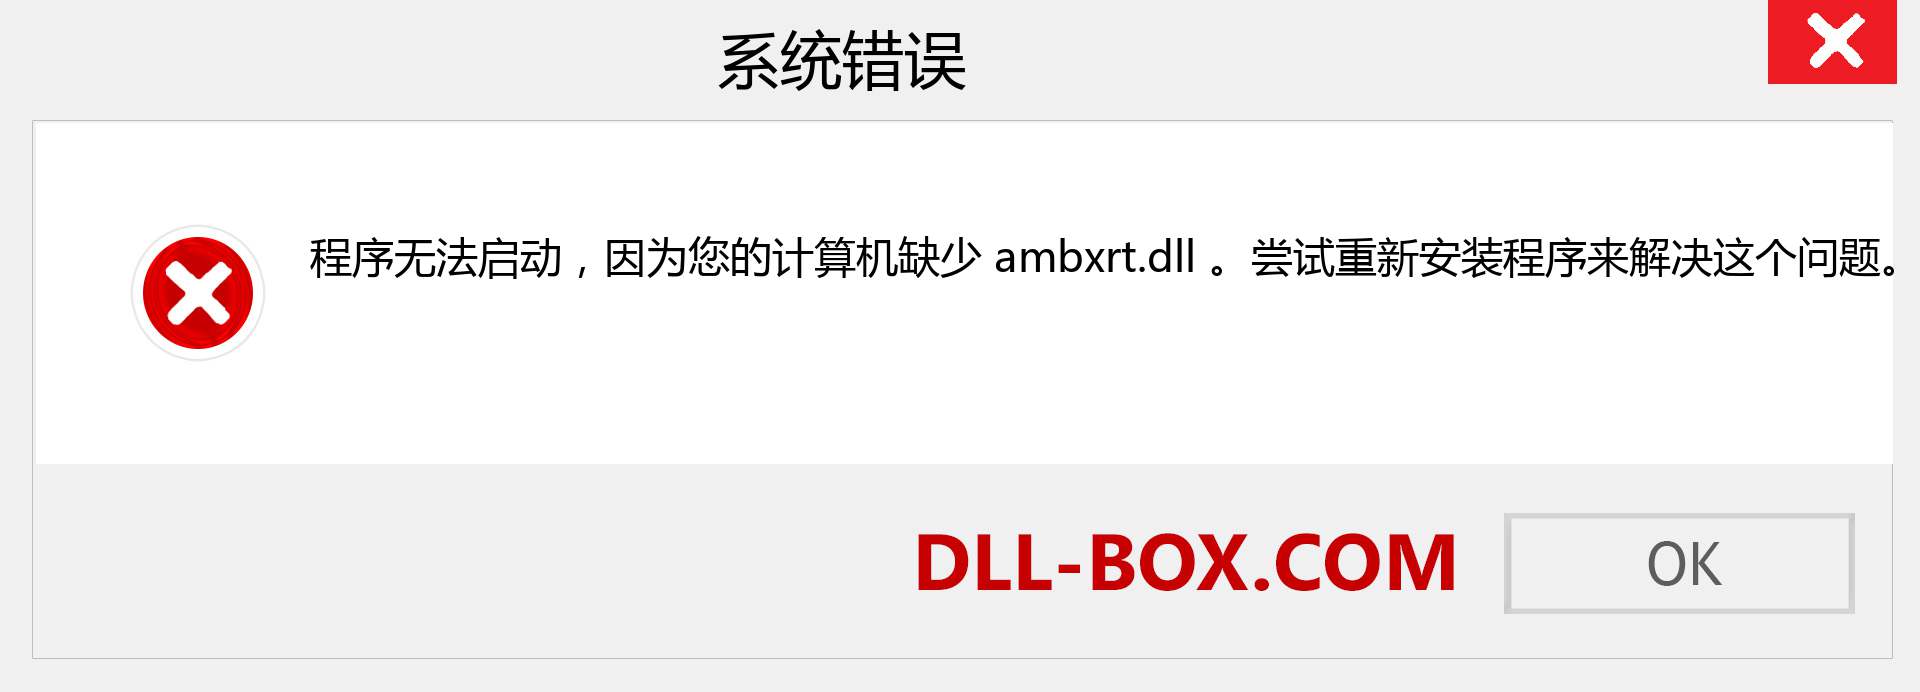 ambxrt.dll 文件丢失？。 适用于 Windows 7、8、10 的下载 - 修复 Windows、照片、图像上的 ambxrt dll 丢失错误